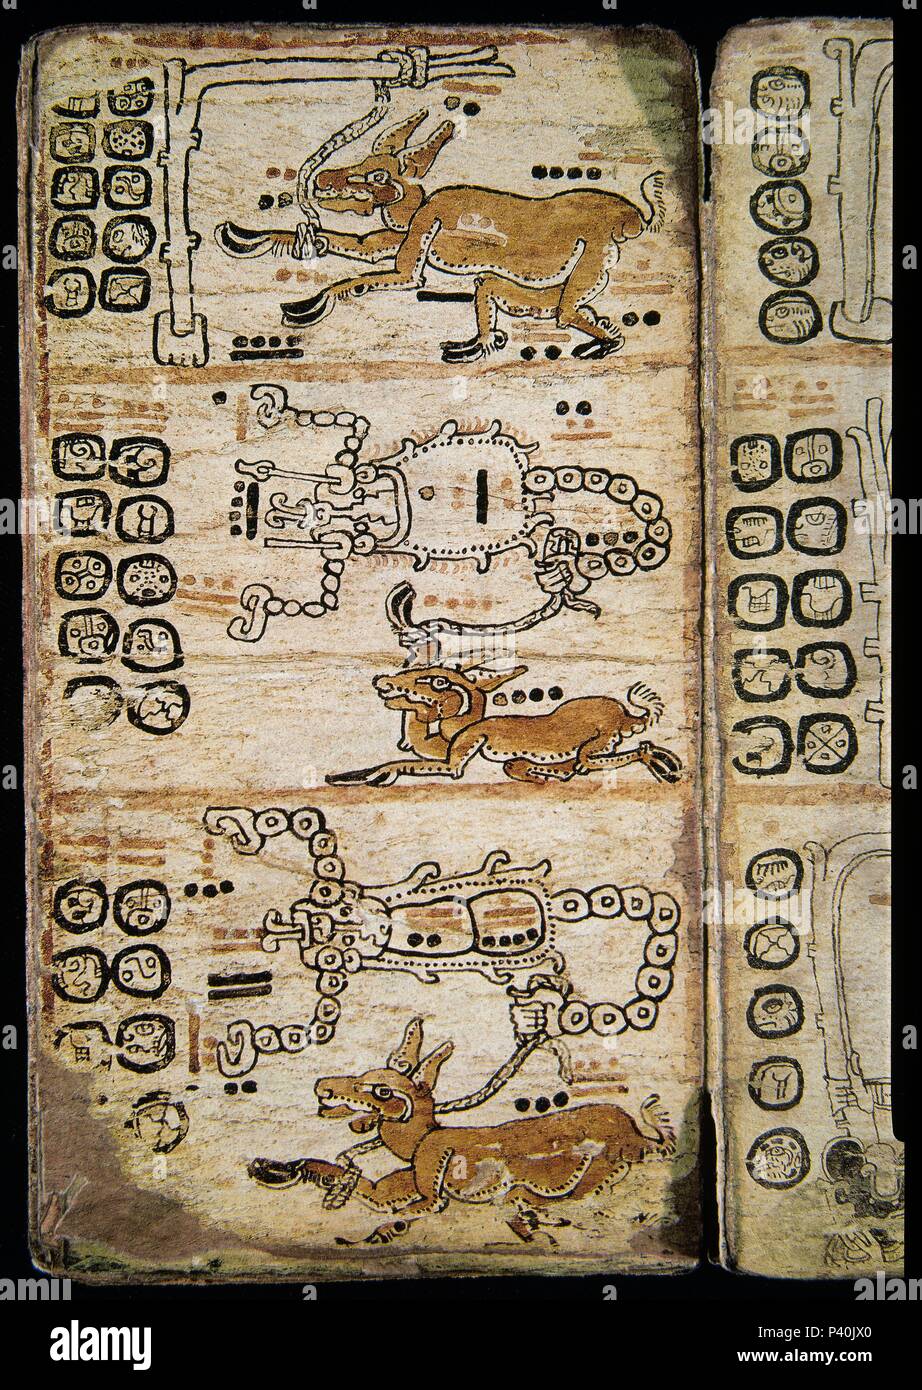 Seite von der Madrider Codex (auch Codex Tro-Cortesianus bekannt). Maya Kultur. Fantasy Geschöpfe. 13. und 15. Jahrhundert. Madrid, Museum von Amerika. Lage: das Museo DE AMERICA - COLECCION, MADRID, SPANIEN. Stockfoto